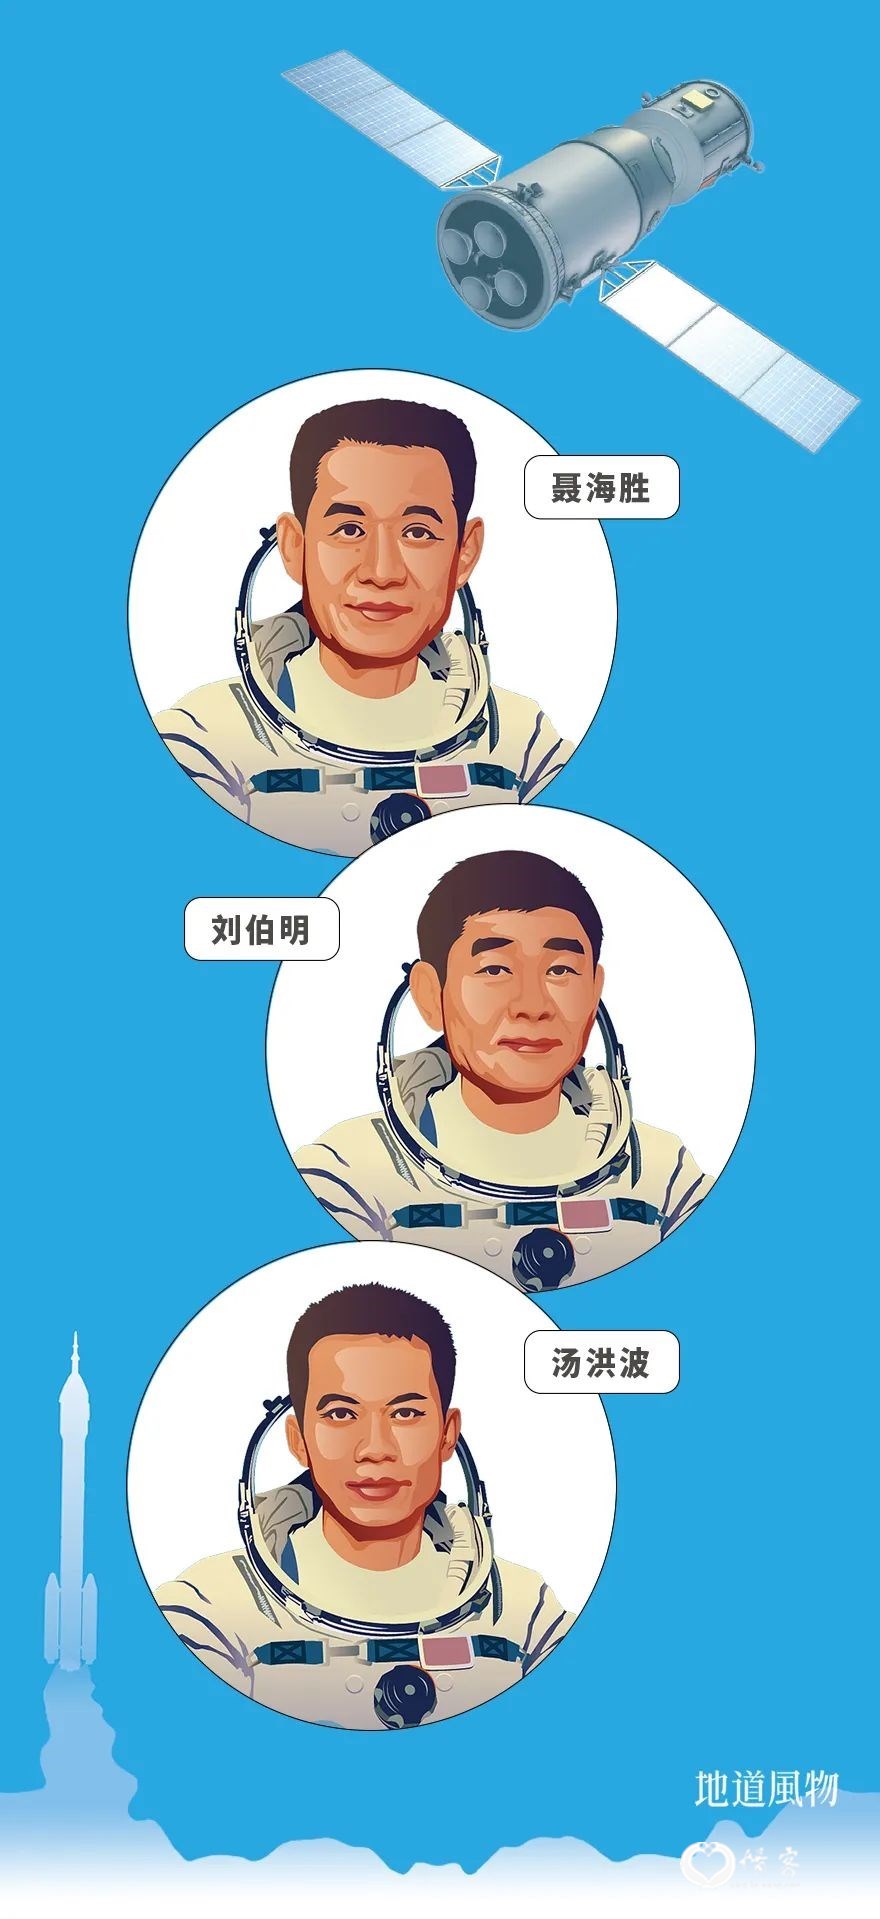 ▲ 与神舟十二号一同进入太空的三位宇航员 。图/视觉中国，设计/刘航